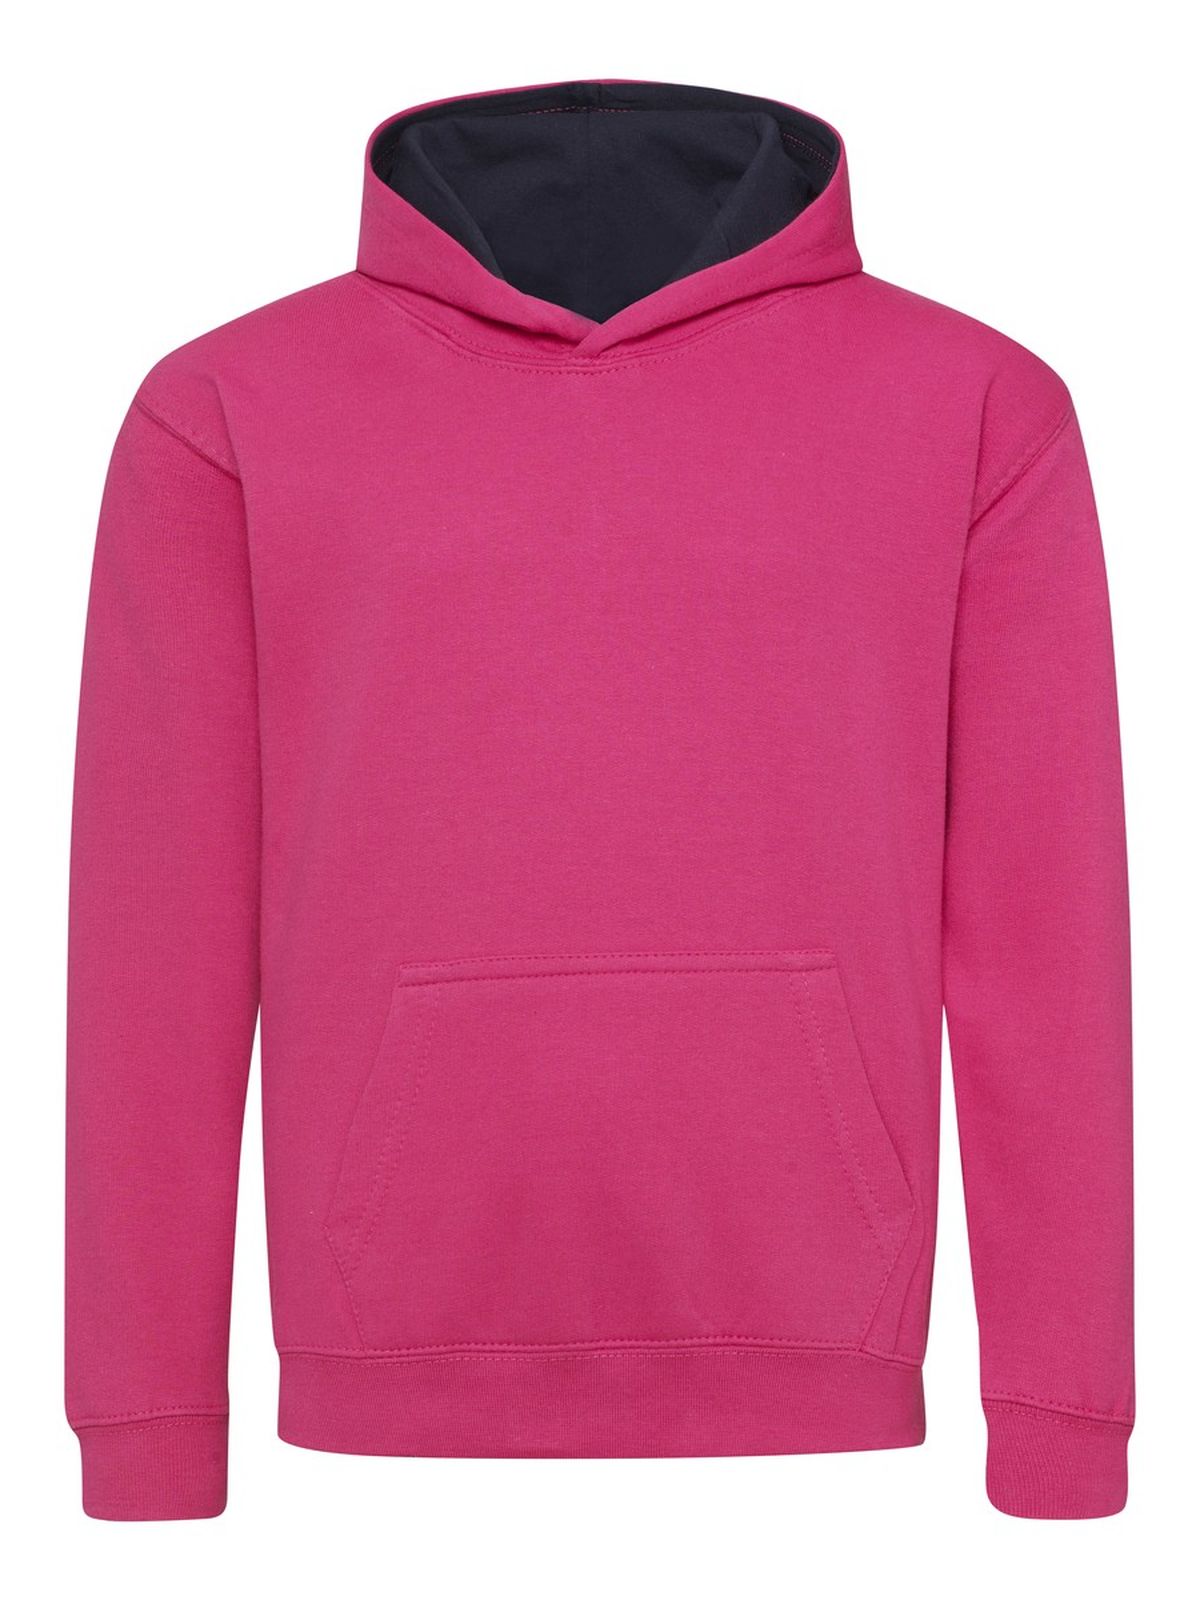 kids-varsity-hoodie-hot-pink-french-navy.webp